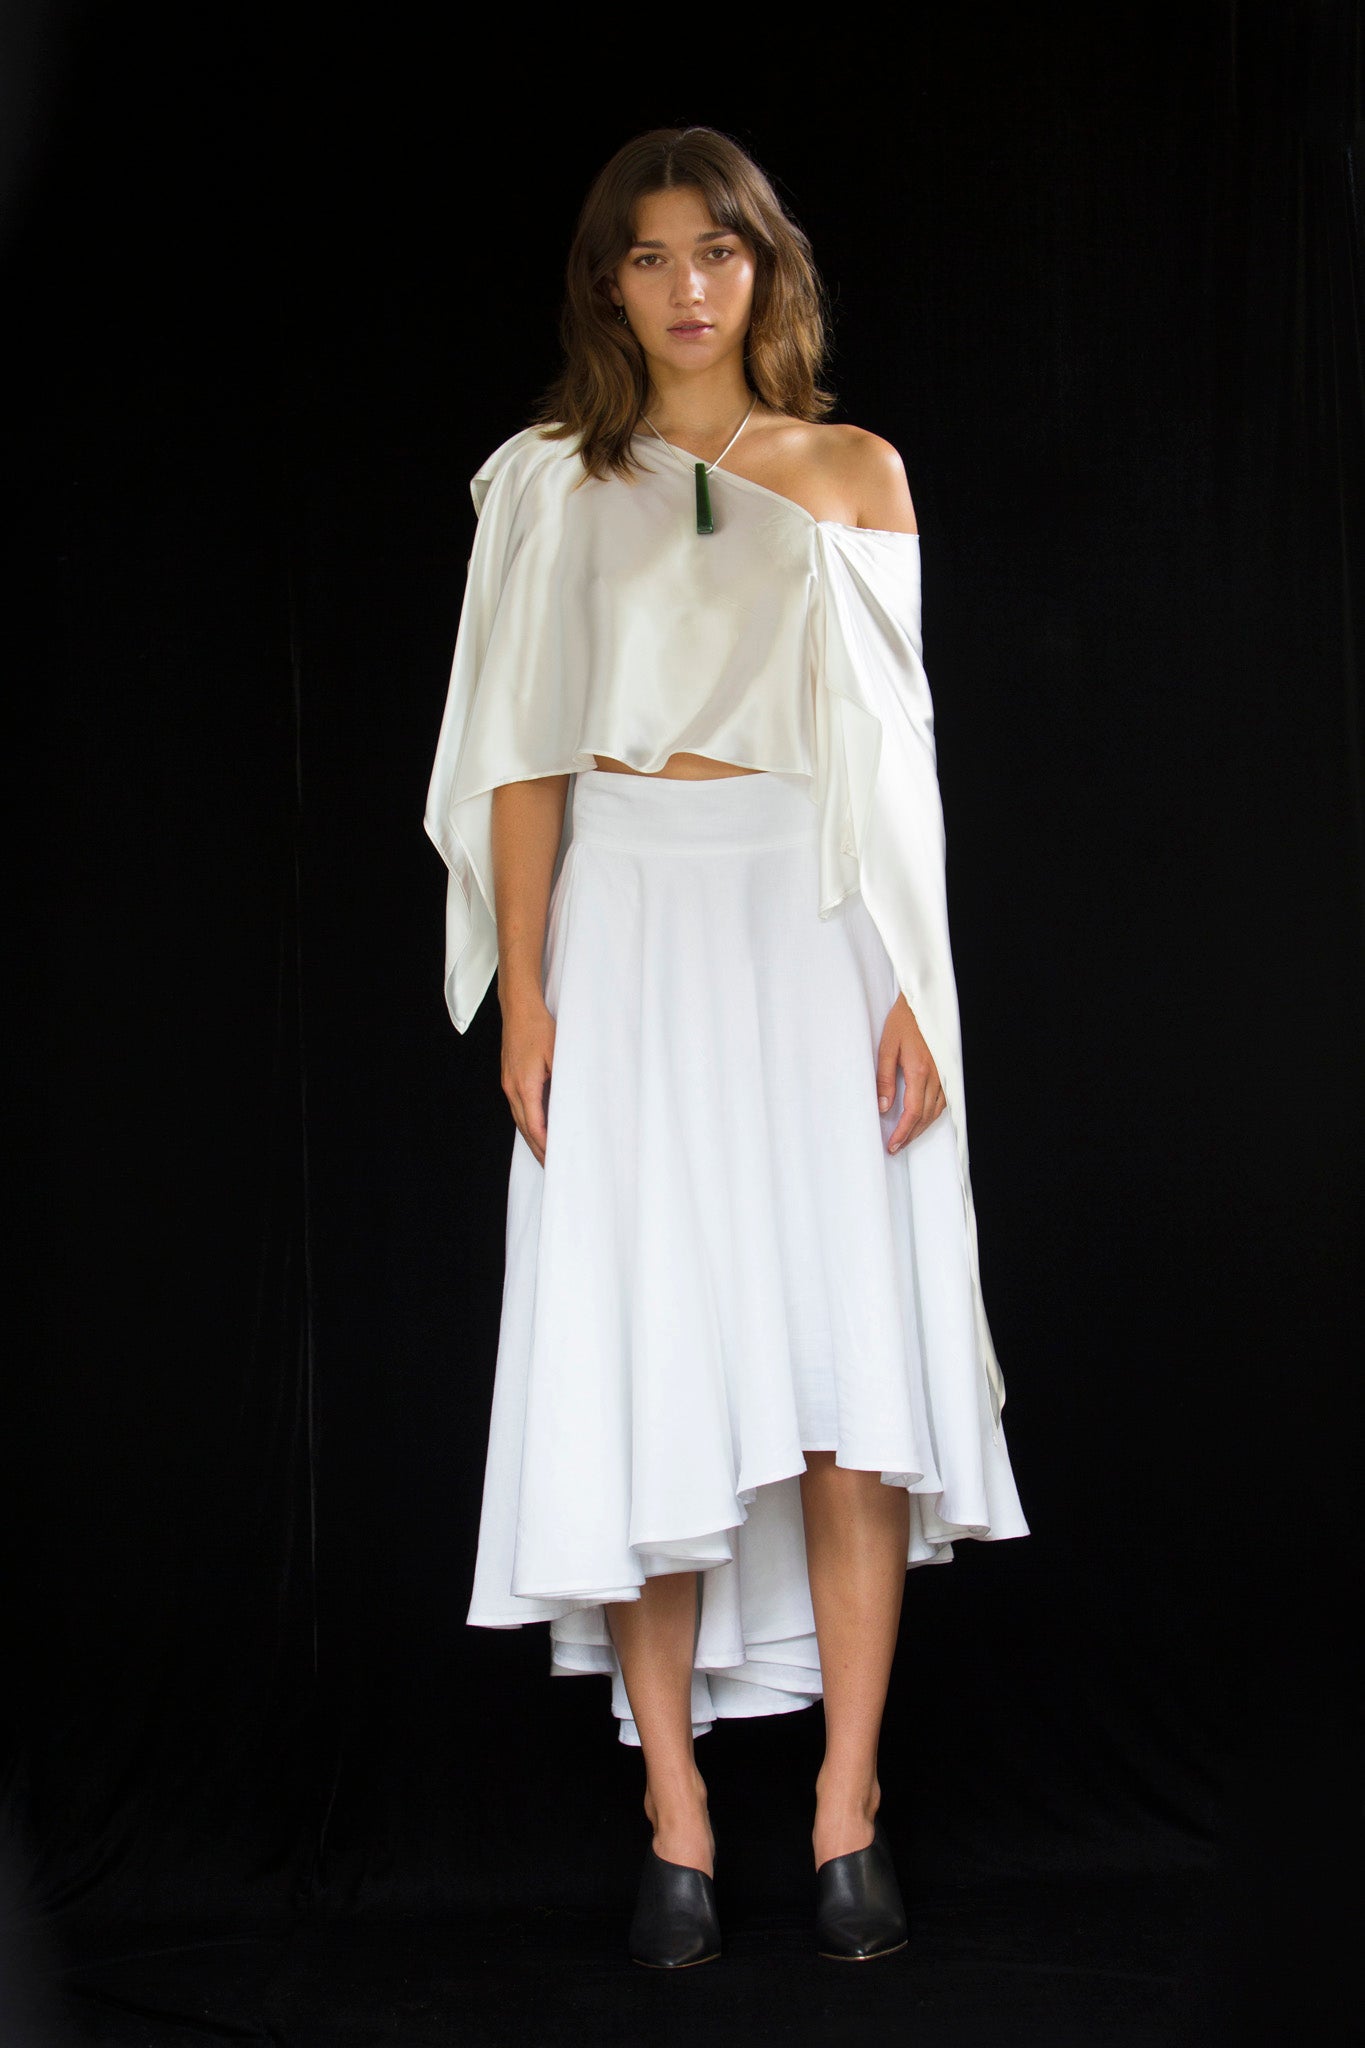 Hiirere | Skirt & Dress